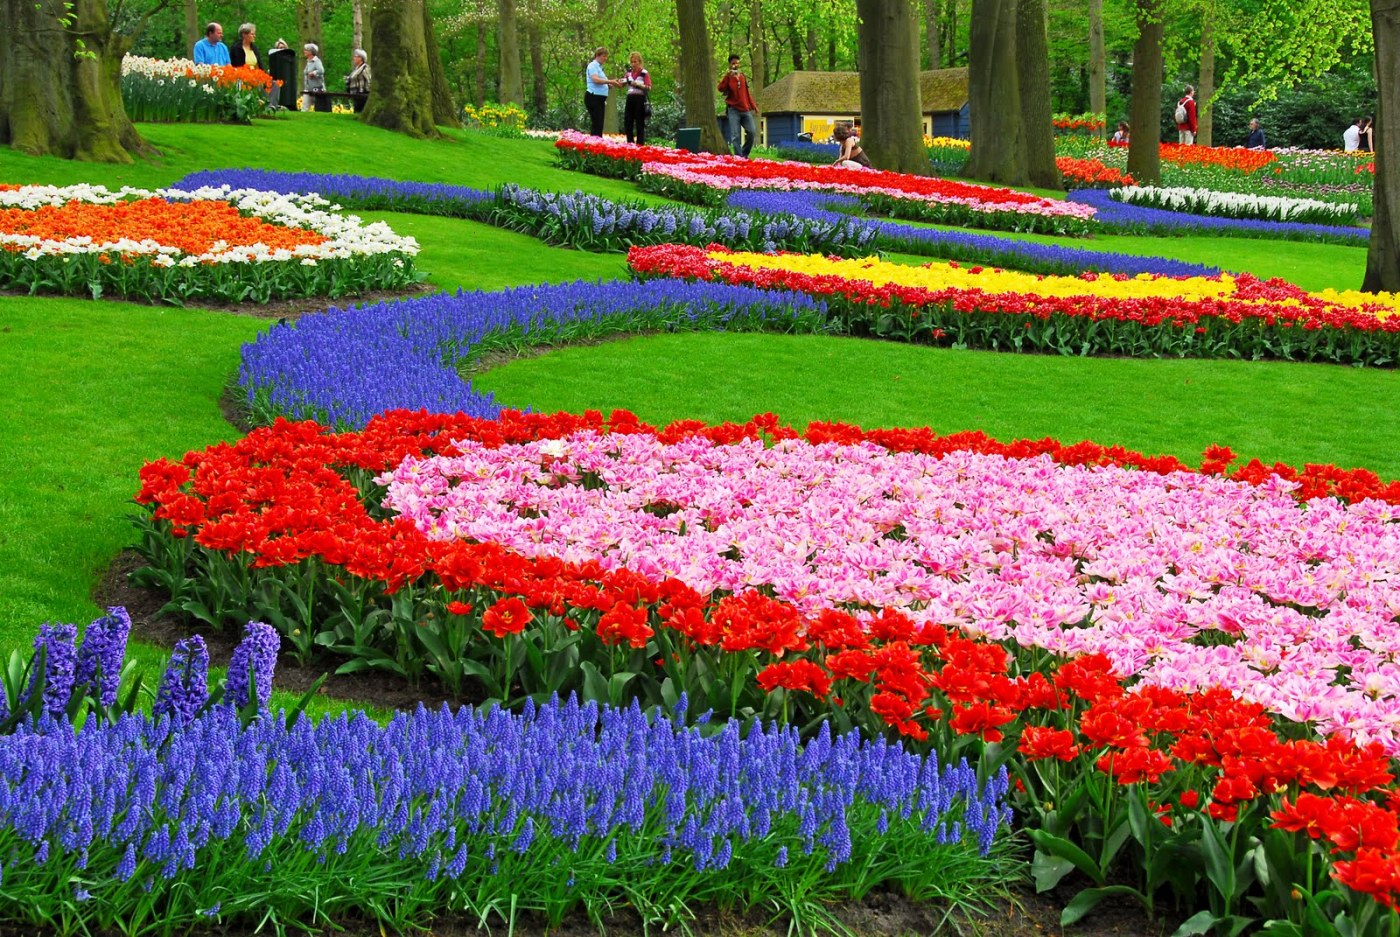 Gambar Pemandangan Taman Bunga Foto Bunga Tulip Flower Garden